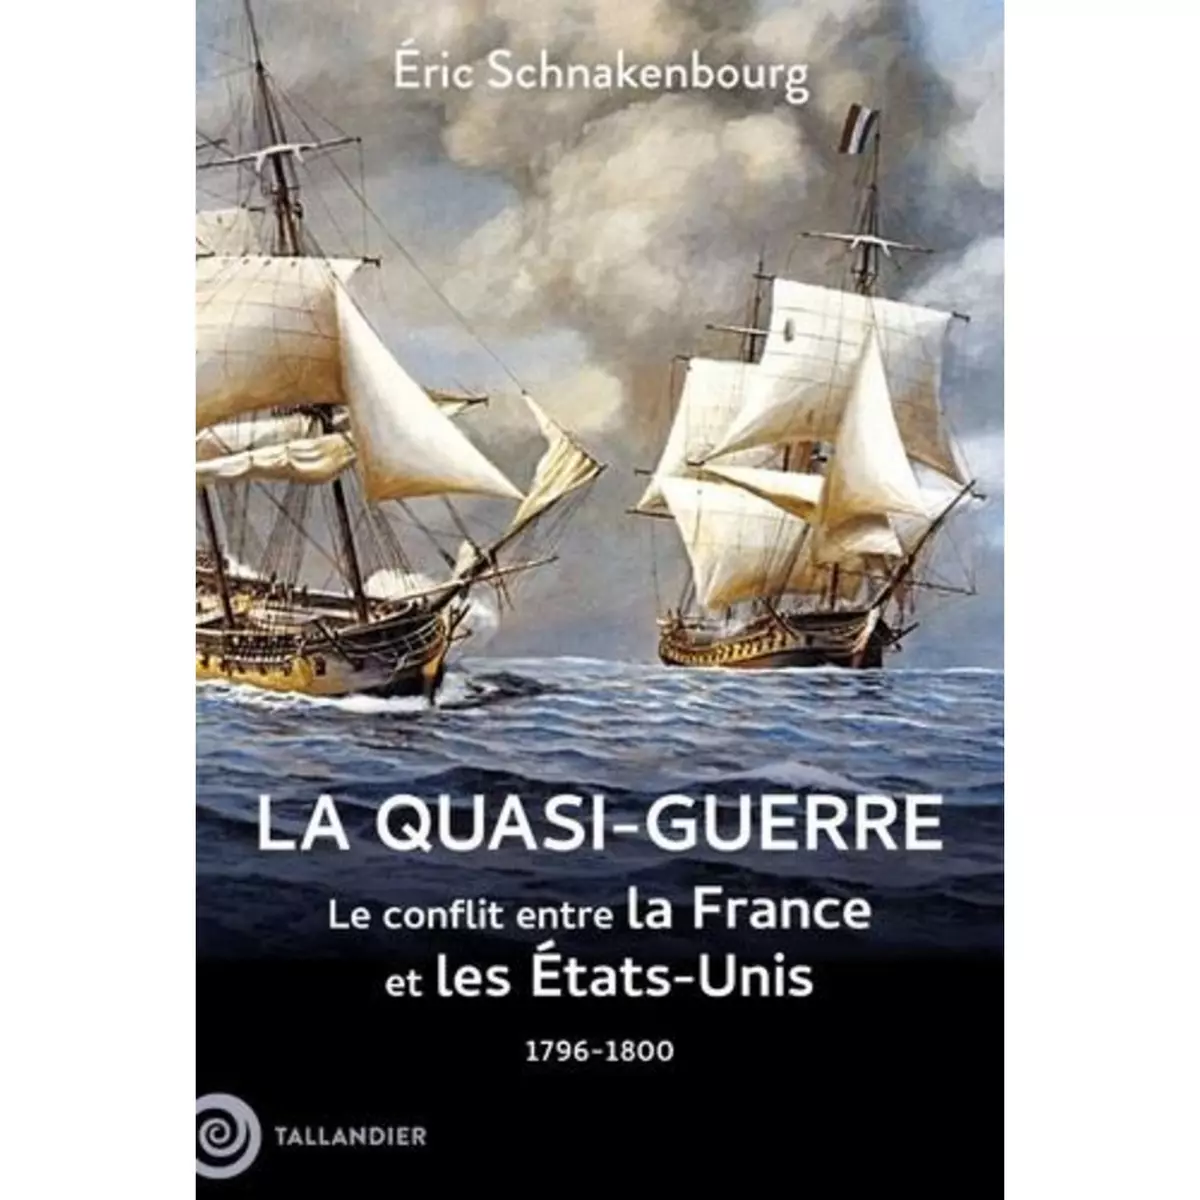  LA QUASI-GUERRE. LE CONFLIT ENTRE LA FRANCE ET LES ETATS-UNIS, 1796-1800, Schnakenbourg Eric